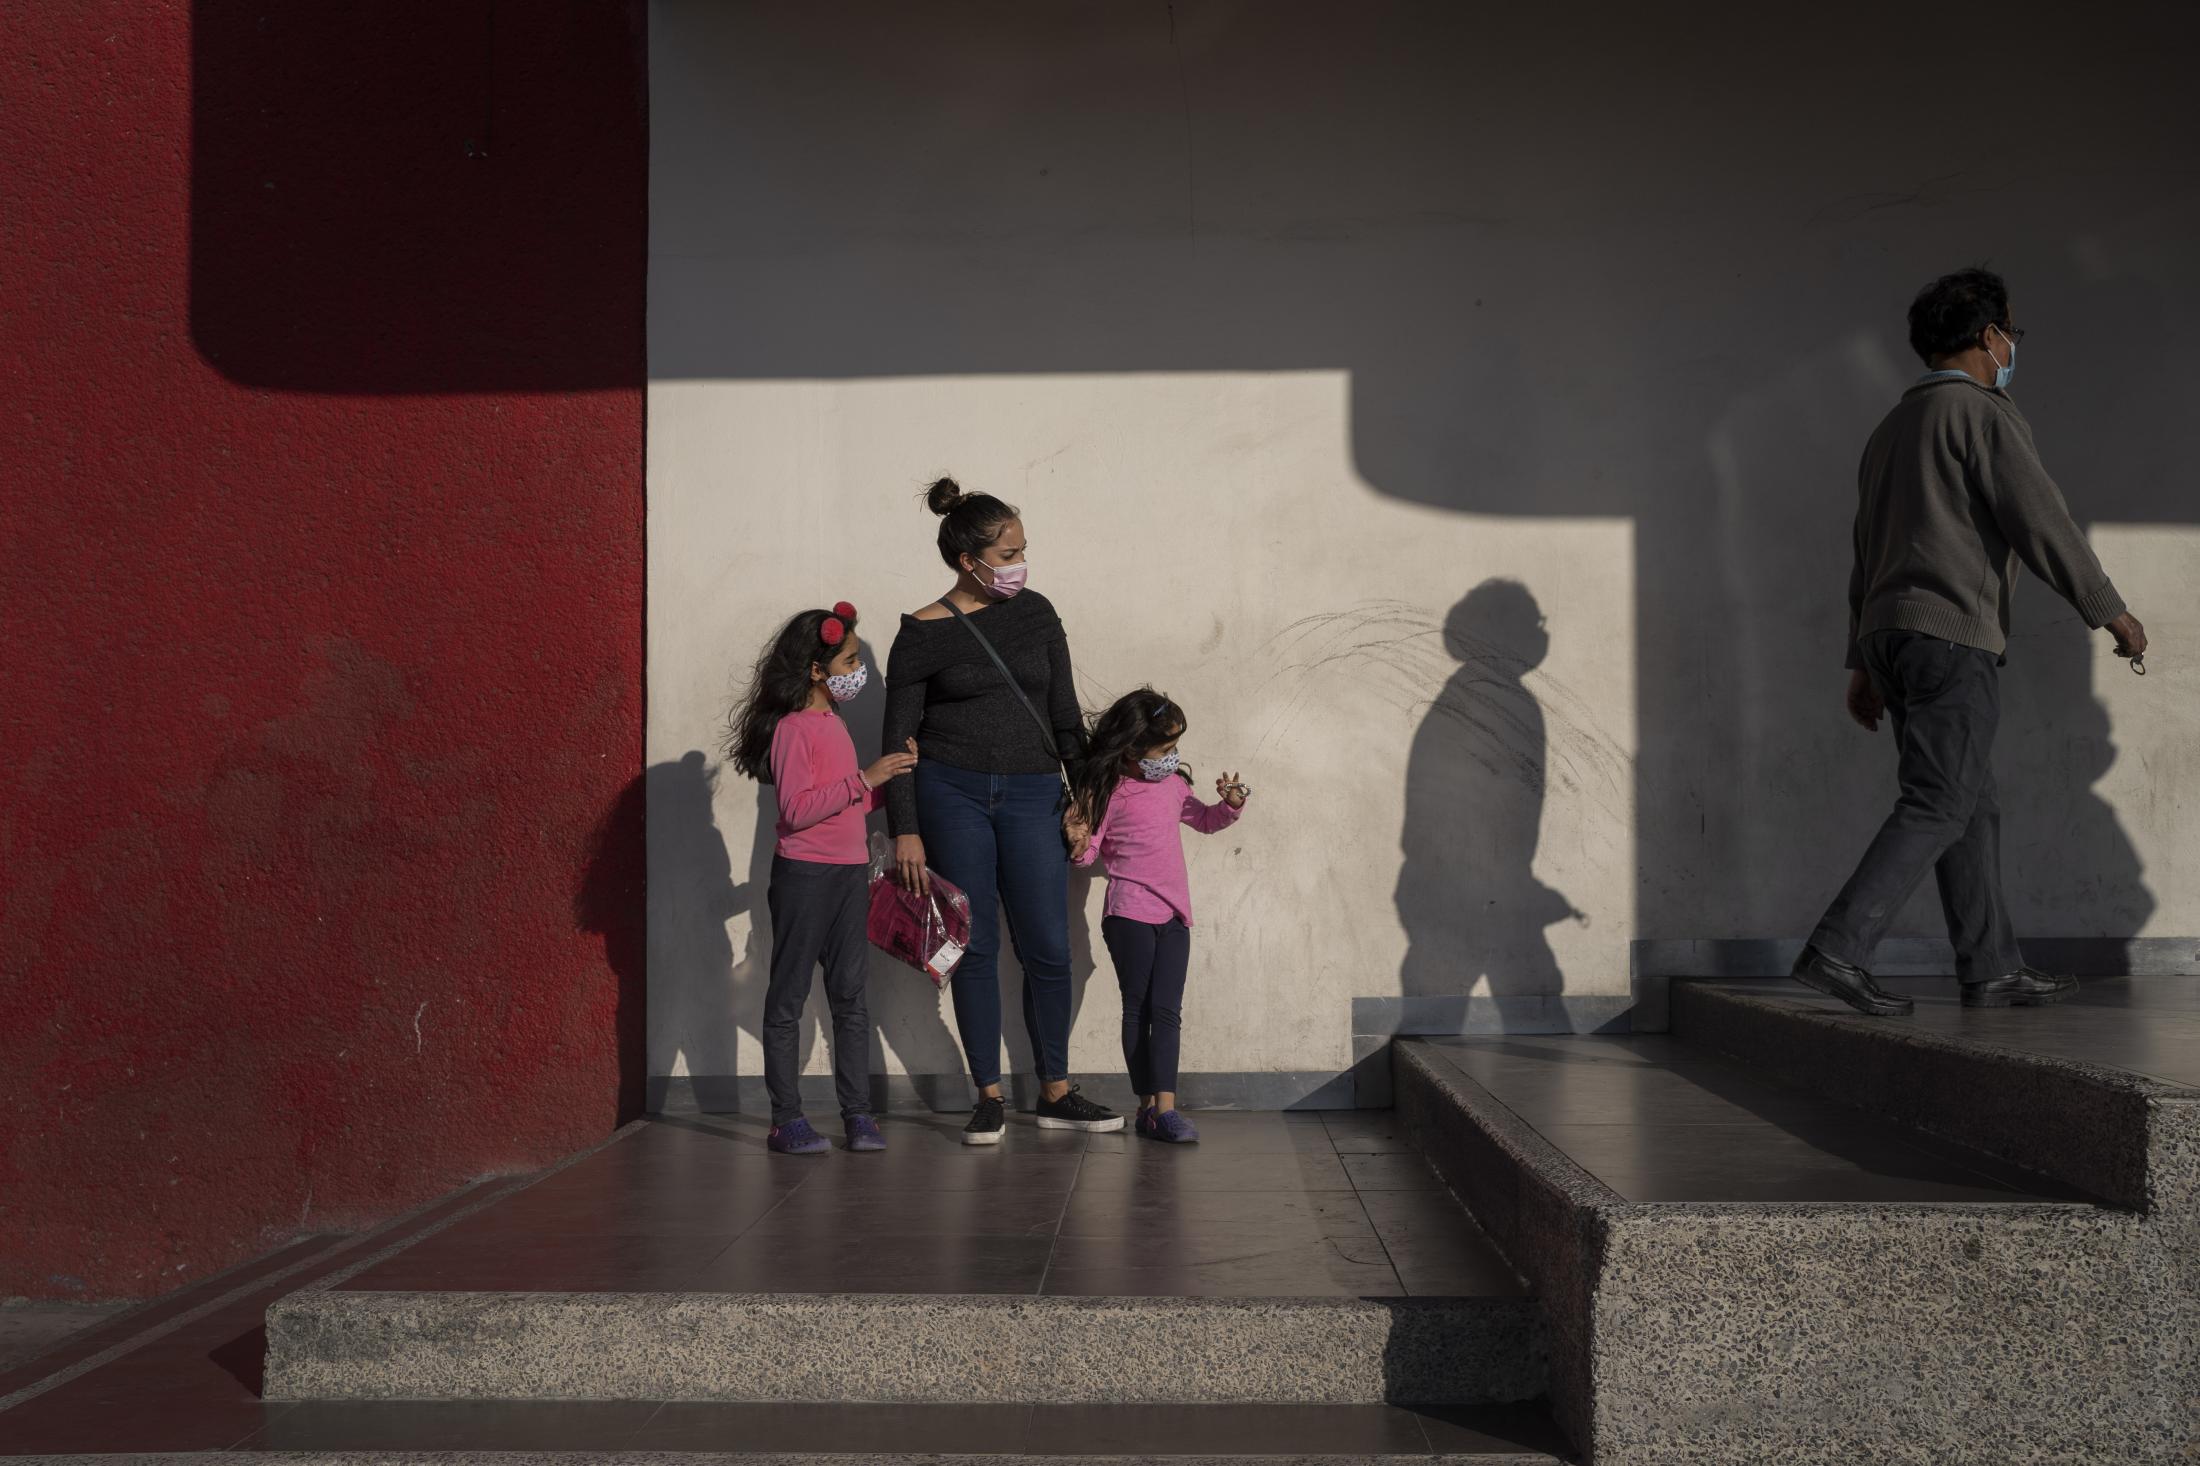 Mujeres ante la pandemia: Mónica - Mónica acompañada de sus dos hijas, espera...